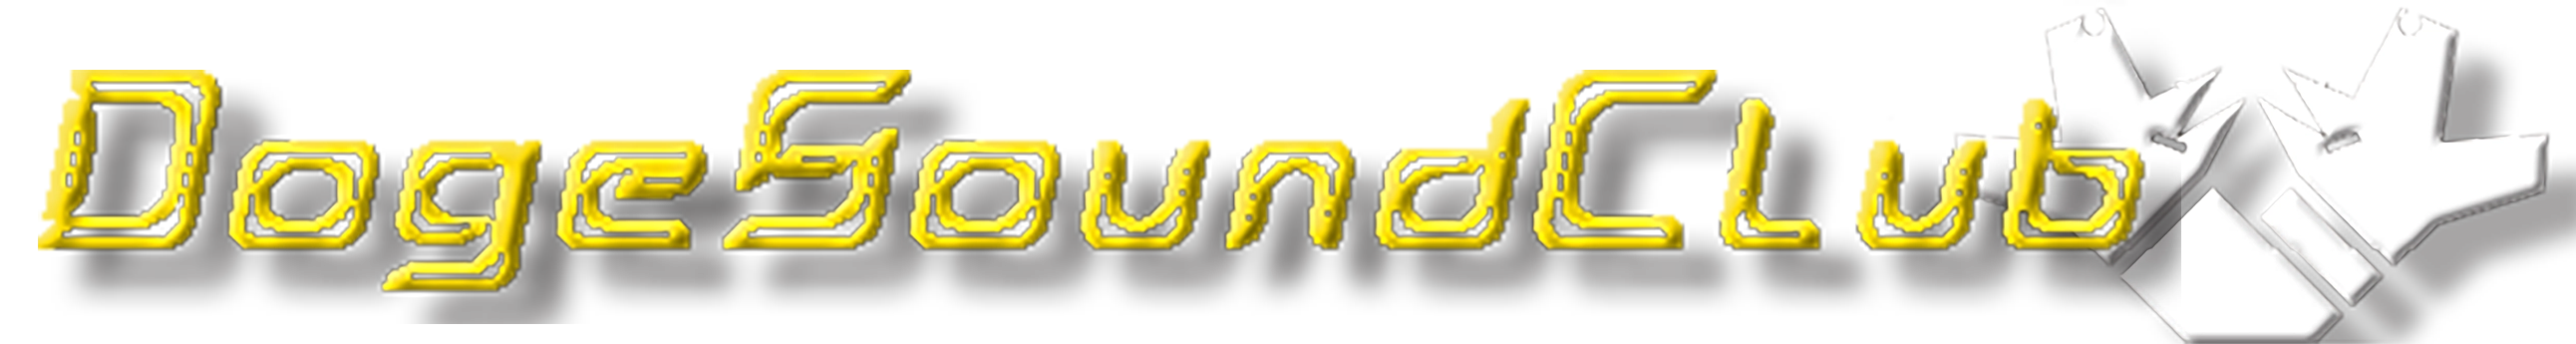 dogesoundclub_logo